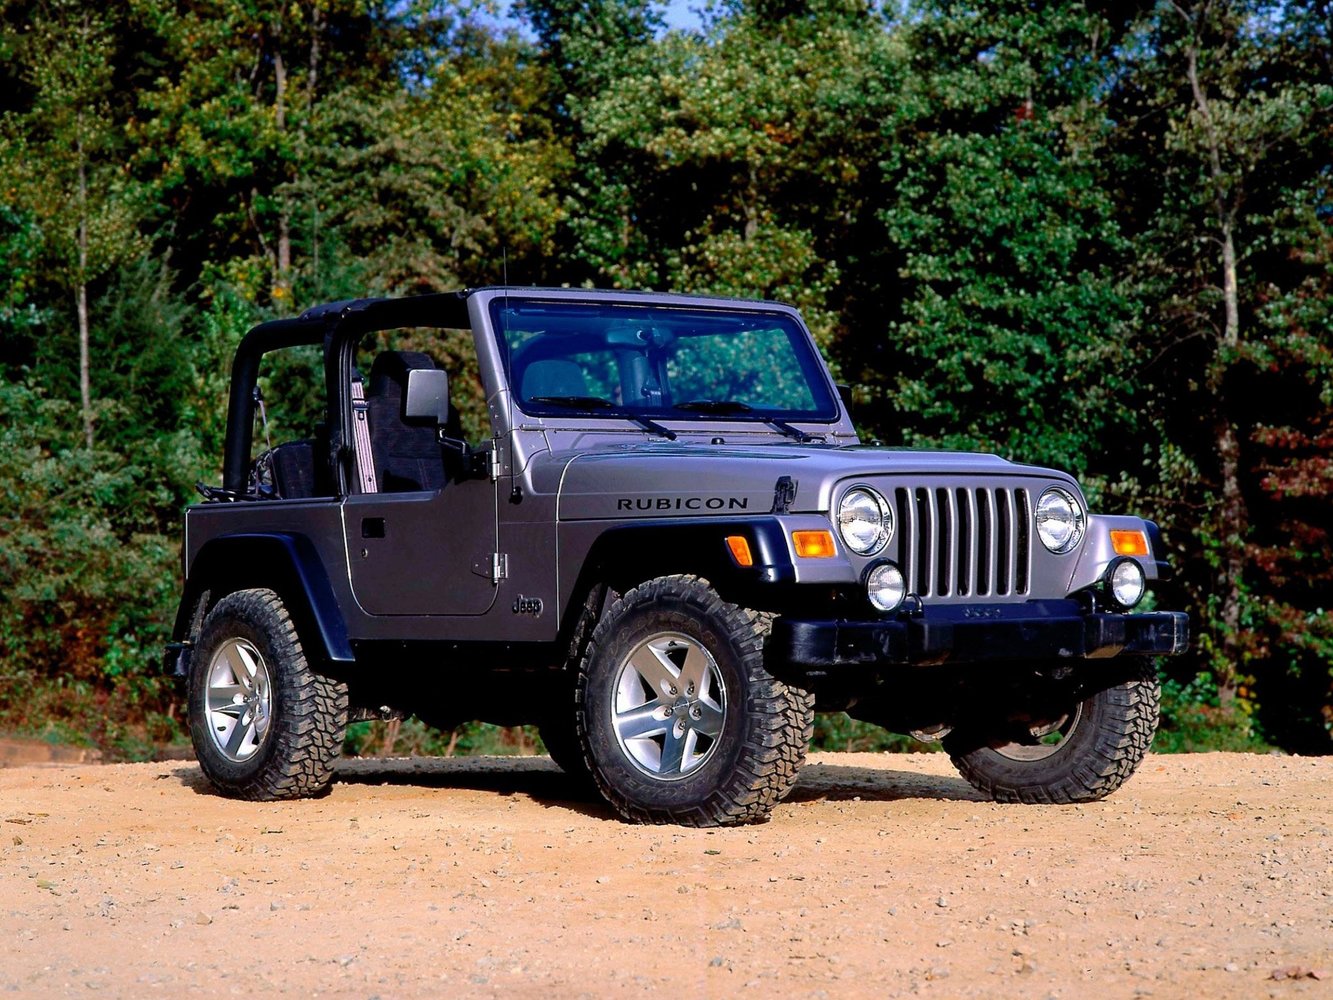 Jeep Wrangler 1997 - 2006